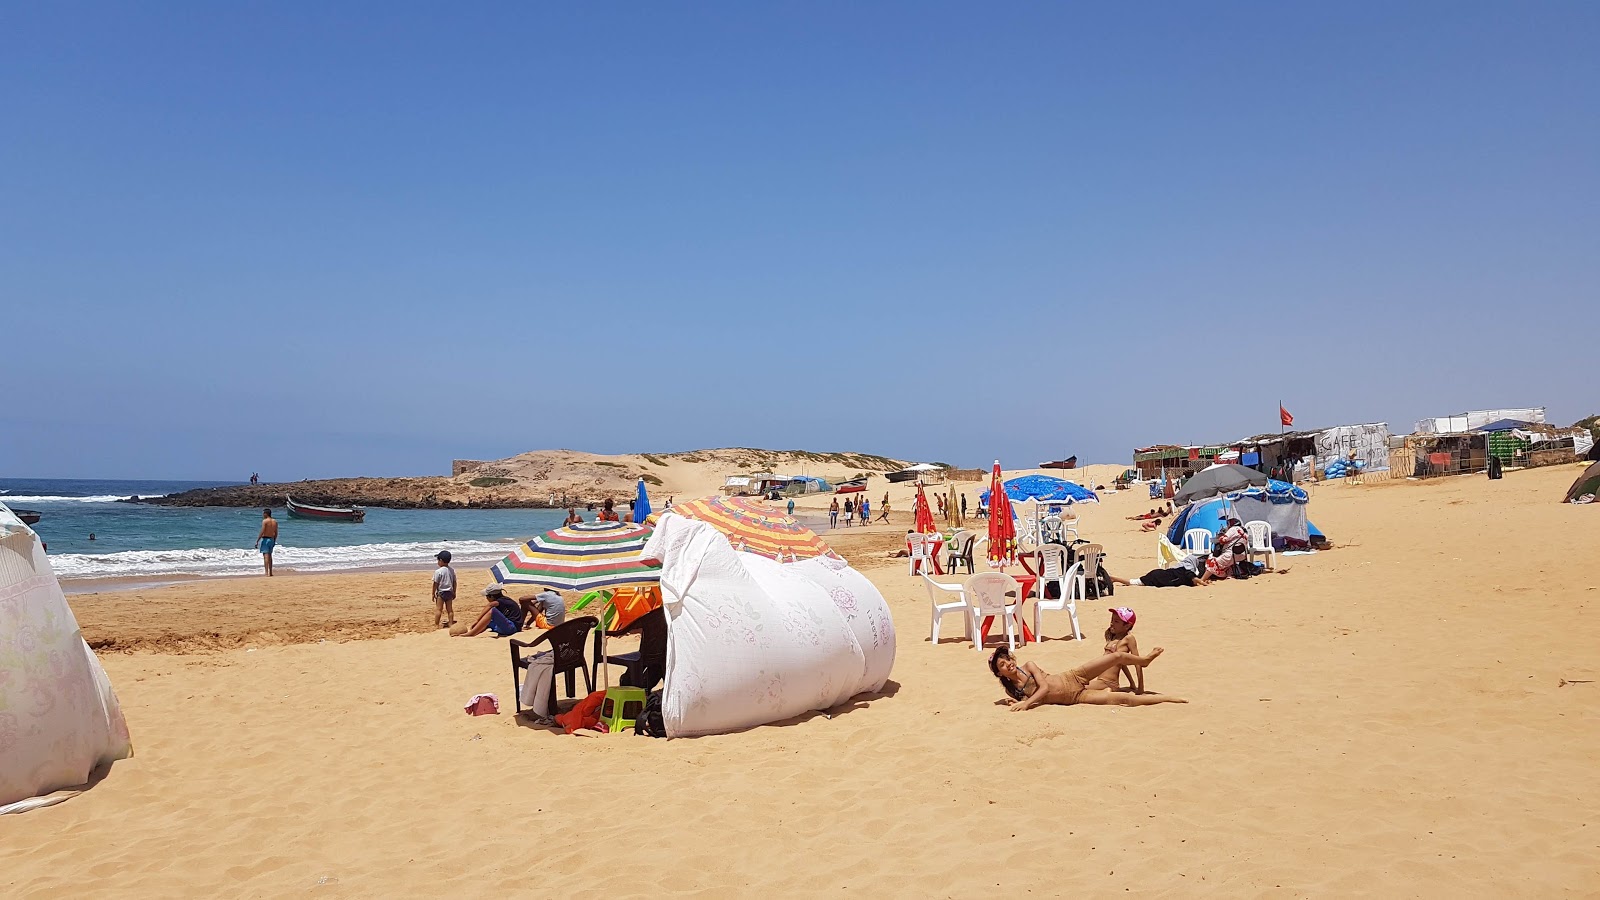 Fotografija Sidi Belkheir Beach shaty sydy balkhyr nahaja se v naravnem okolju